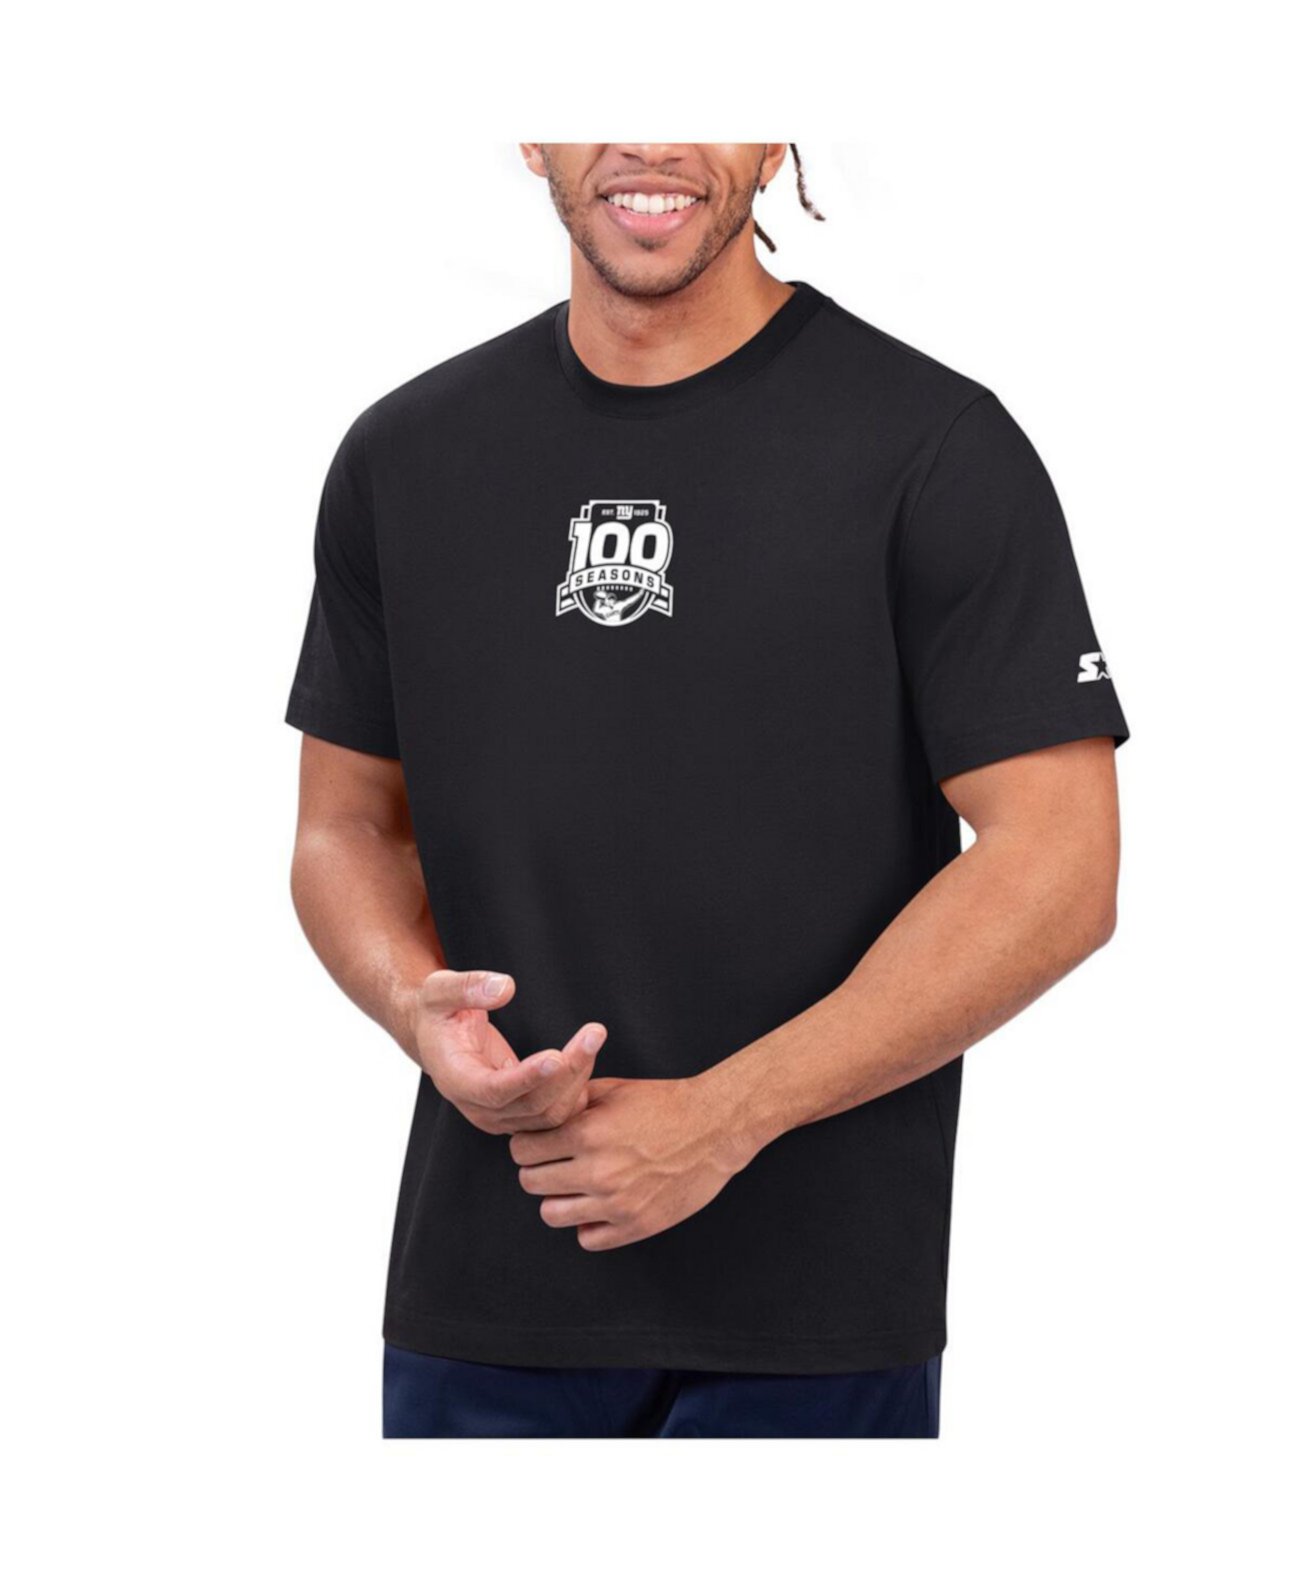 Men's Black New York Giants 100th Season Prime Time T-Shirt Starter